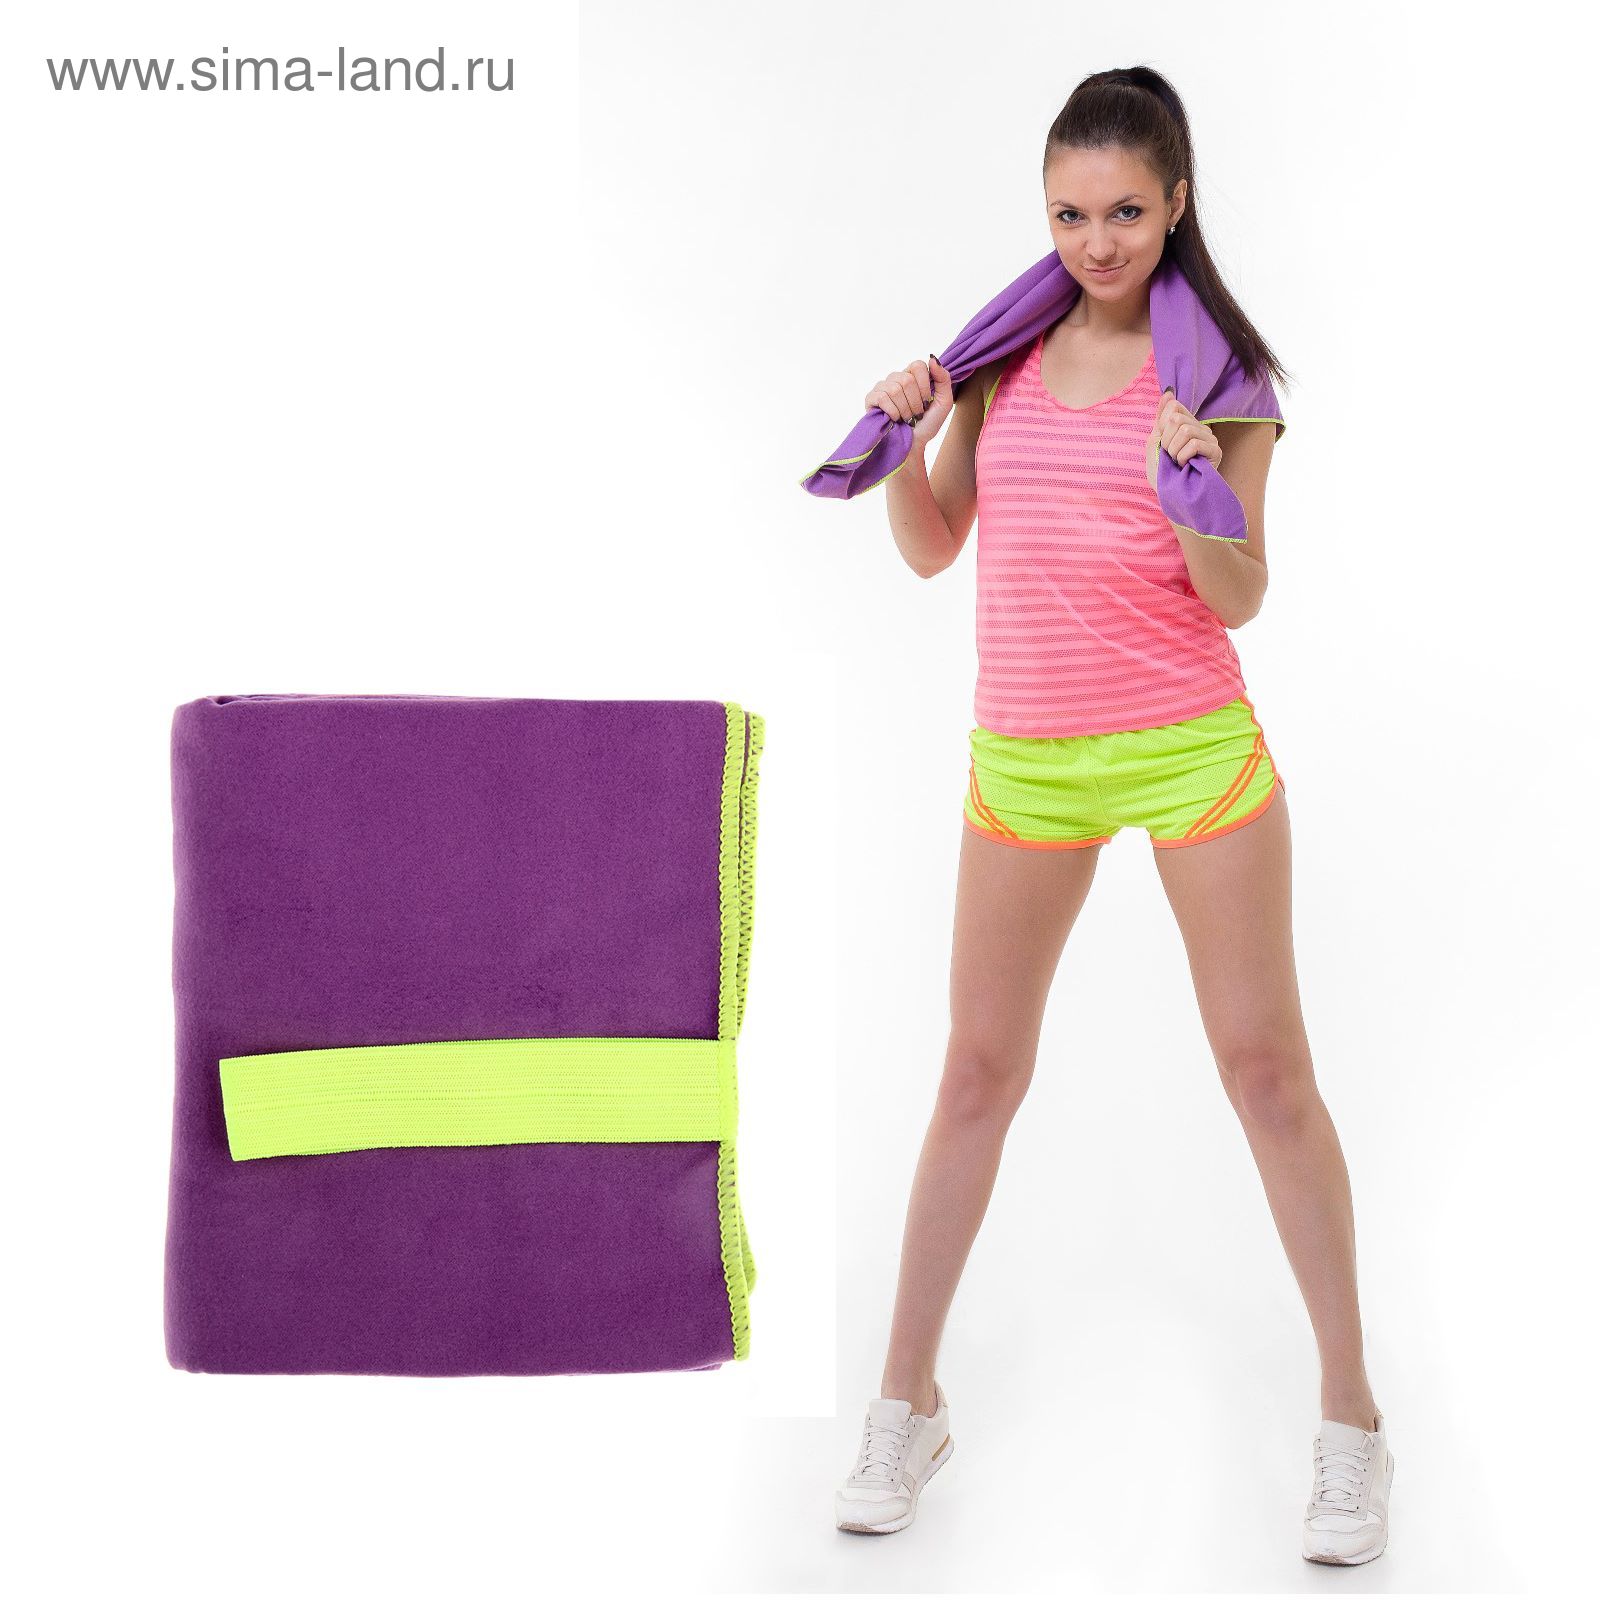 Спортивное полотенце ONLITOP, размер 40х55 см, фиолетовый, 200 г/м2